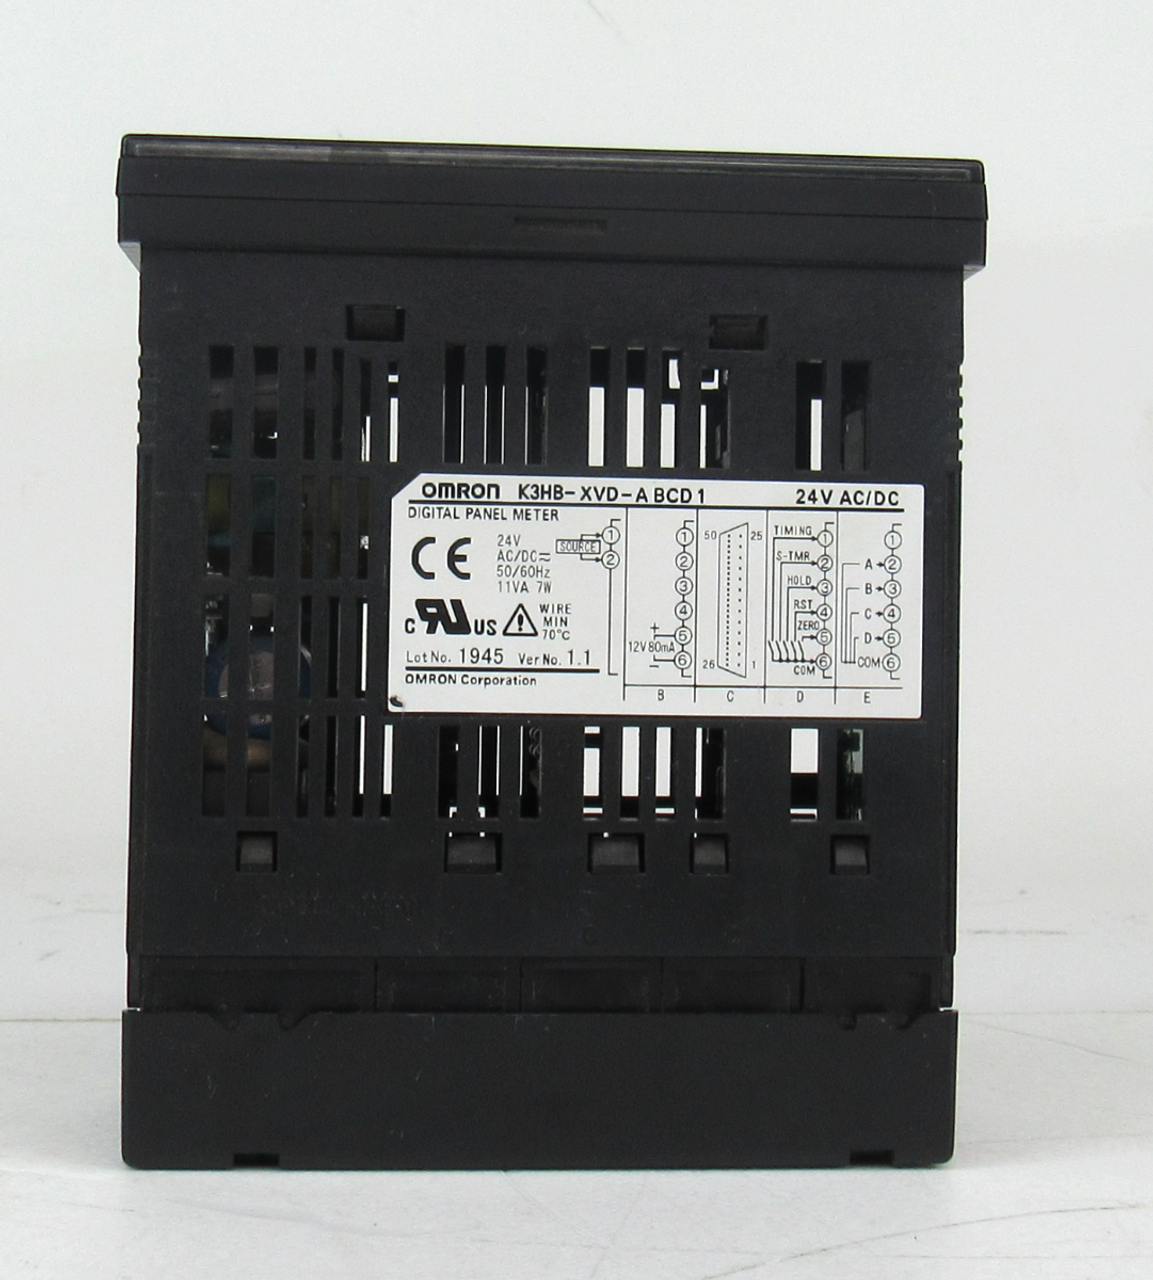 Omron K3HB-XVD-A BCD1 Digital Panel Meter 24V